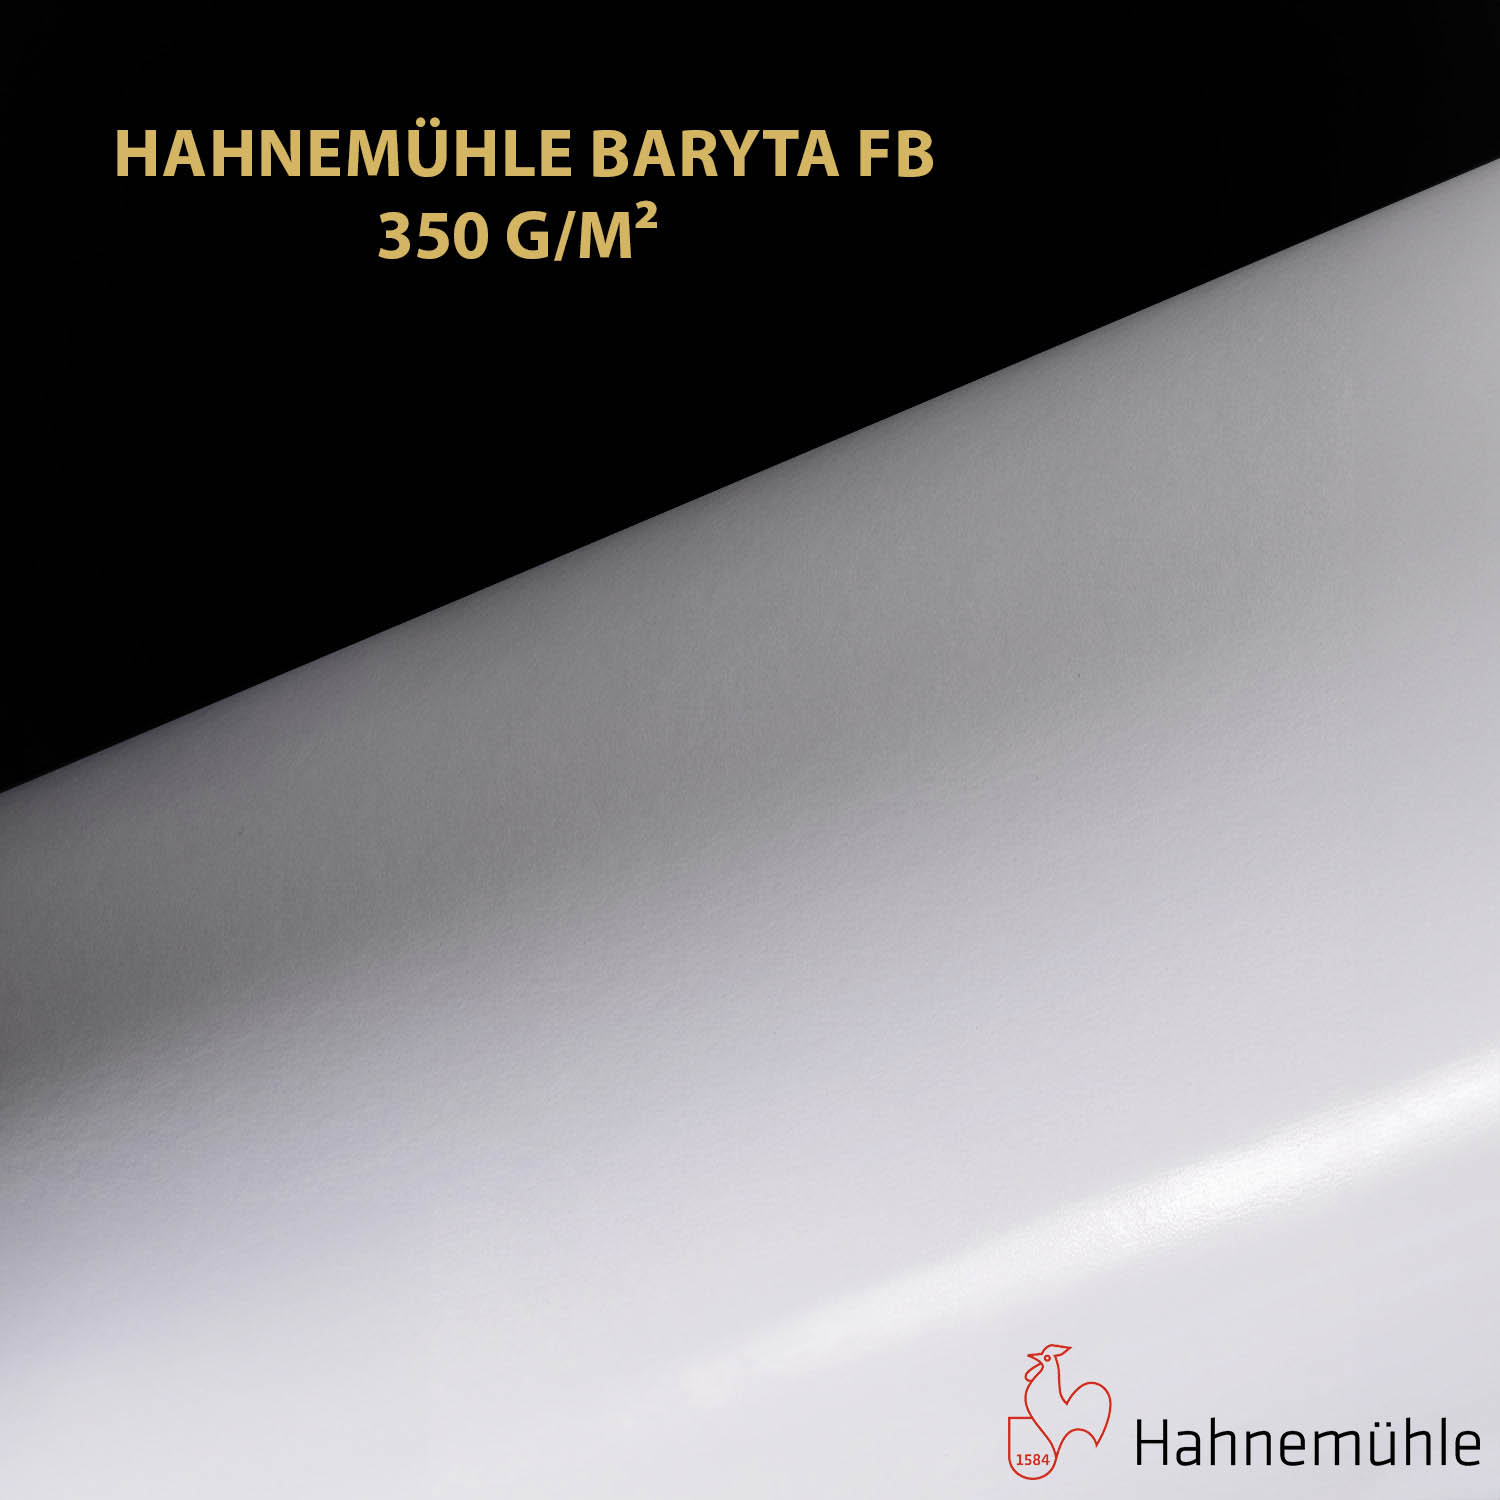 Impression et tirage Fineart pigmentaire sur papier Hahnemuhle Baryta FB 350 à Montpellier